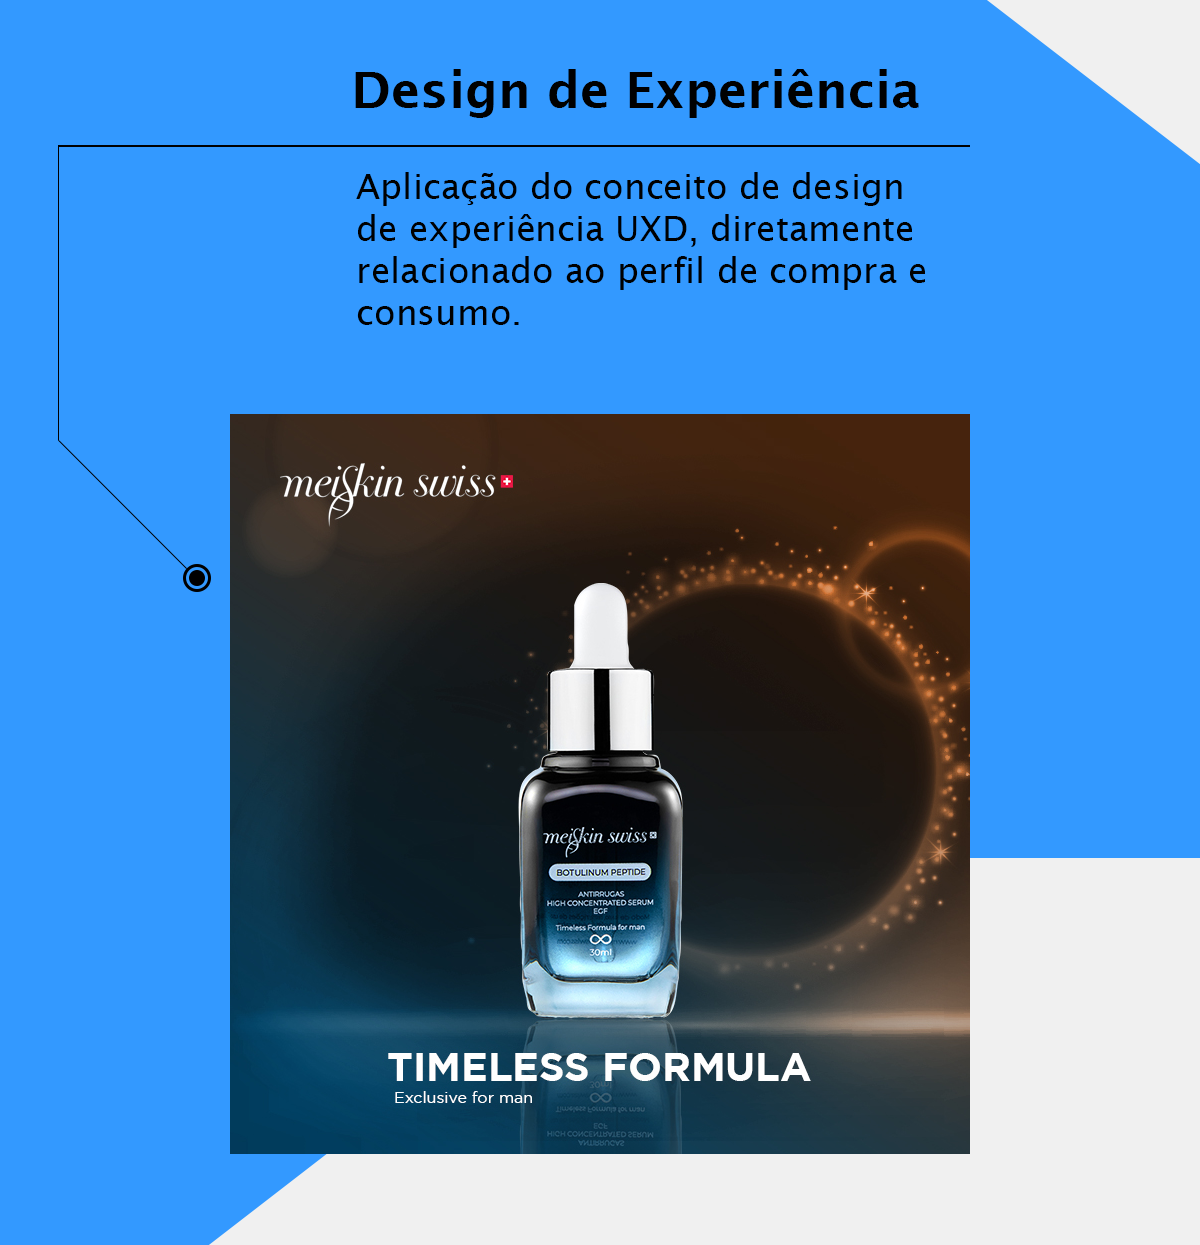 uxd design design UX DESIGN UXD user experience User Experience Design branding  brand